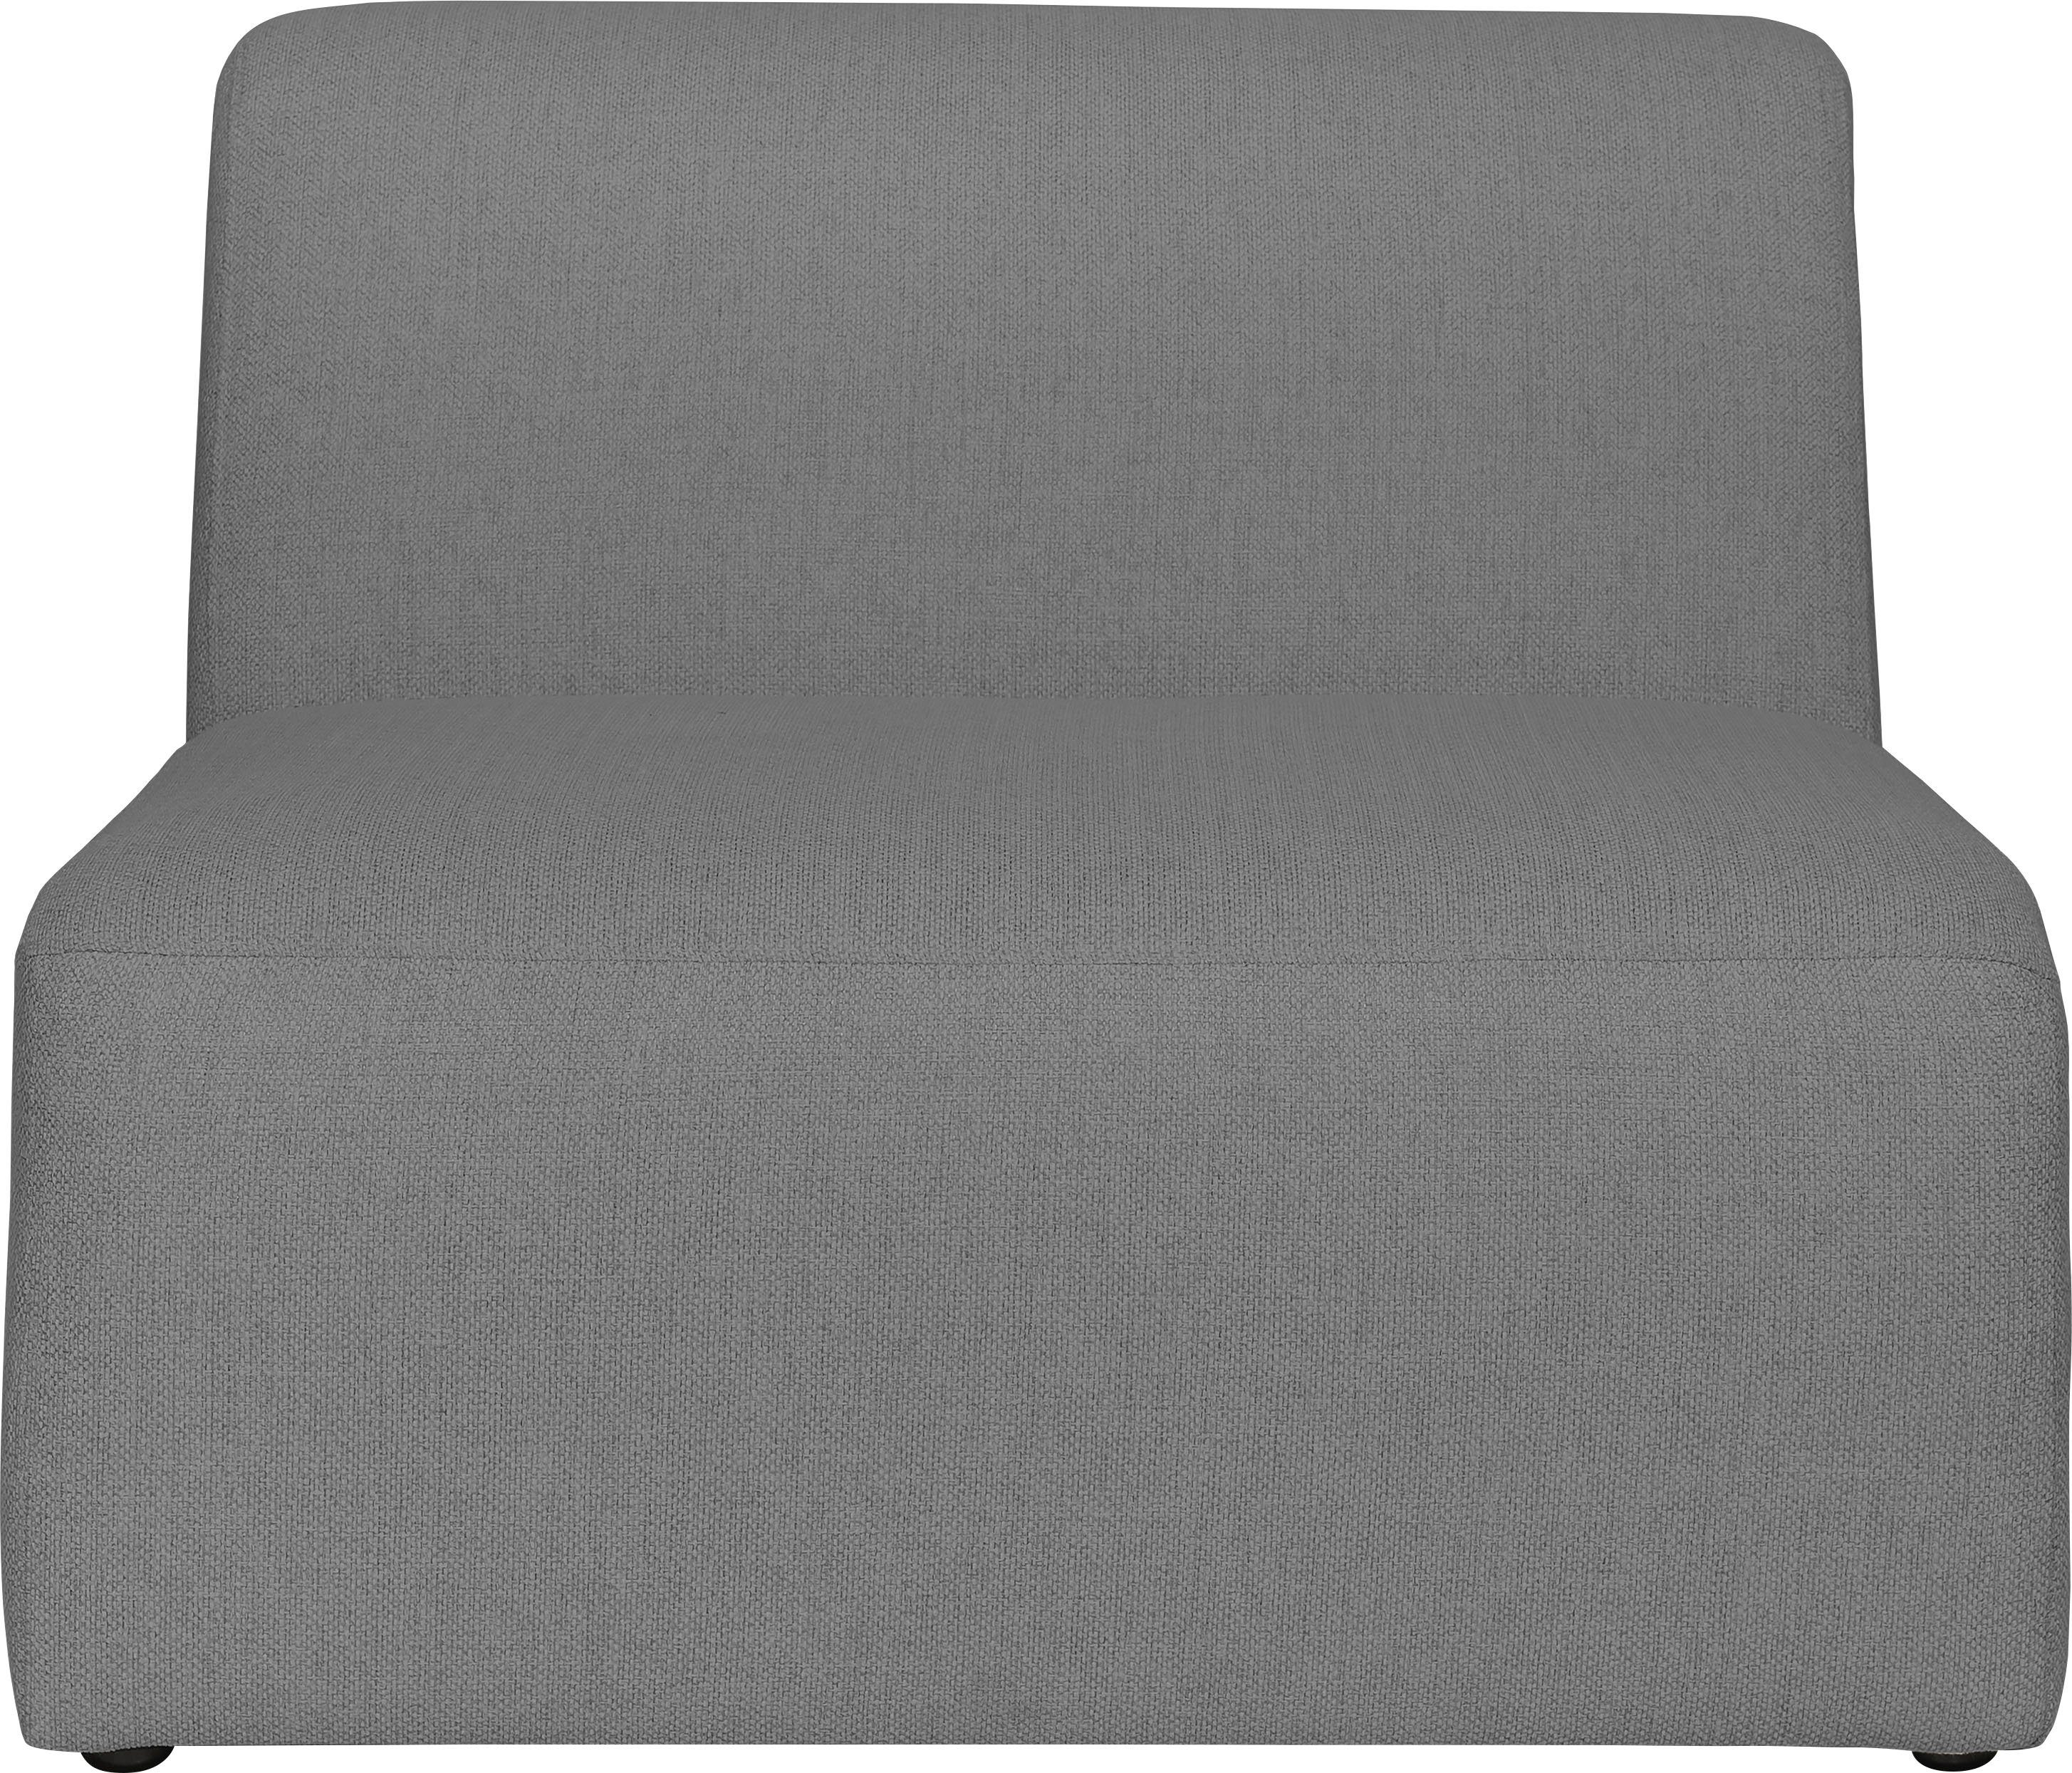 INOSIGN Sofa-Mittelelement Koa, grey angenehmer schöne Komfort, Proportionen